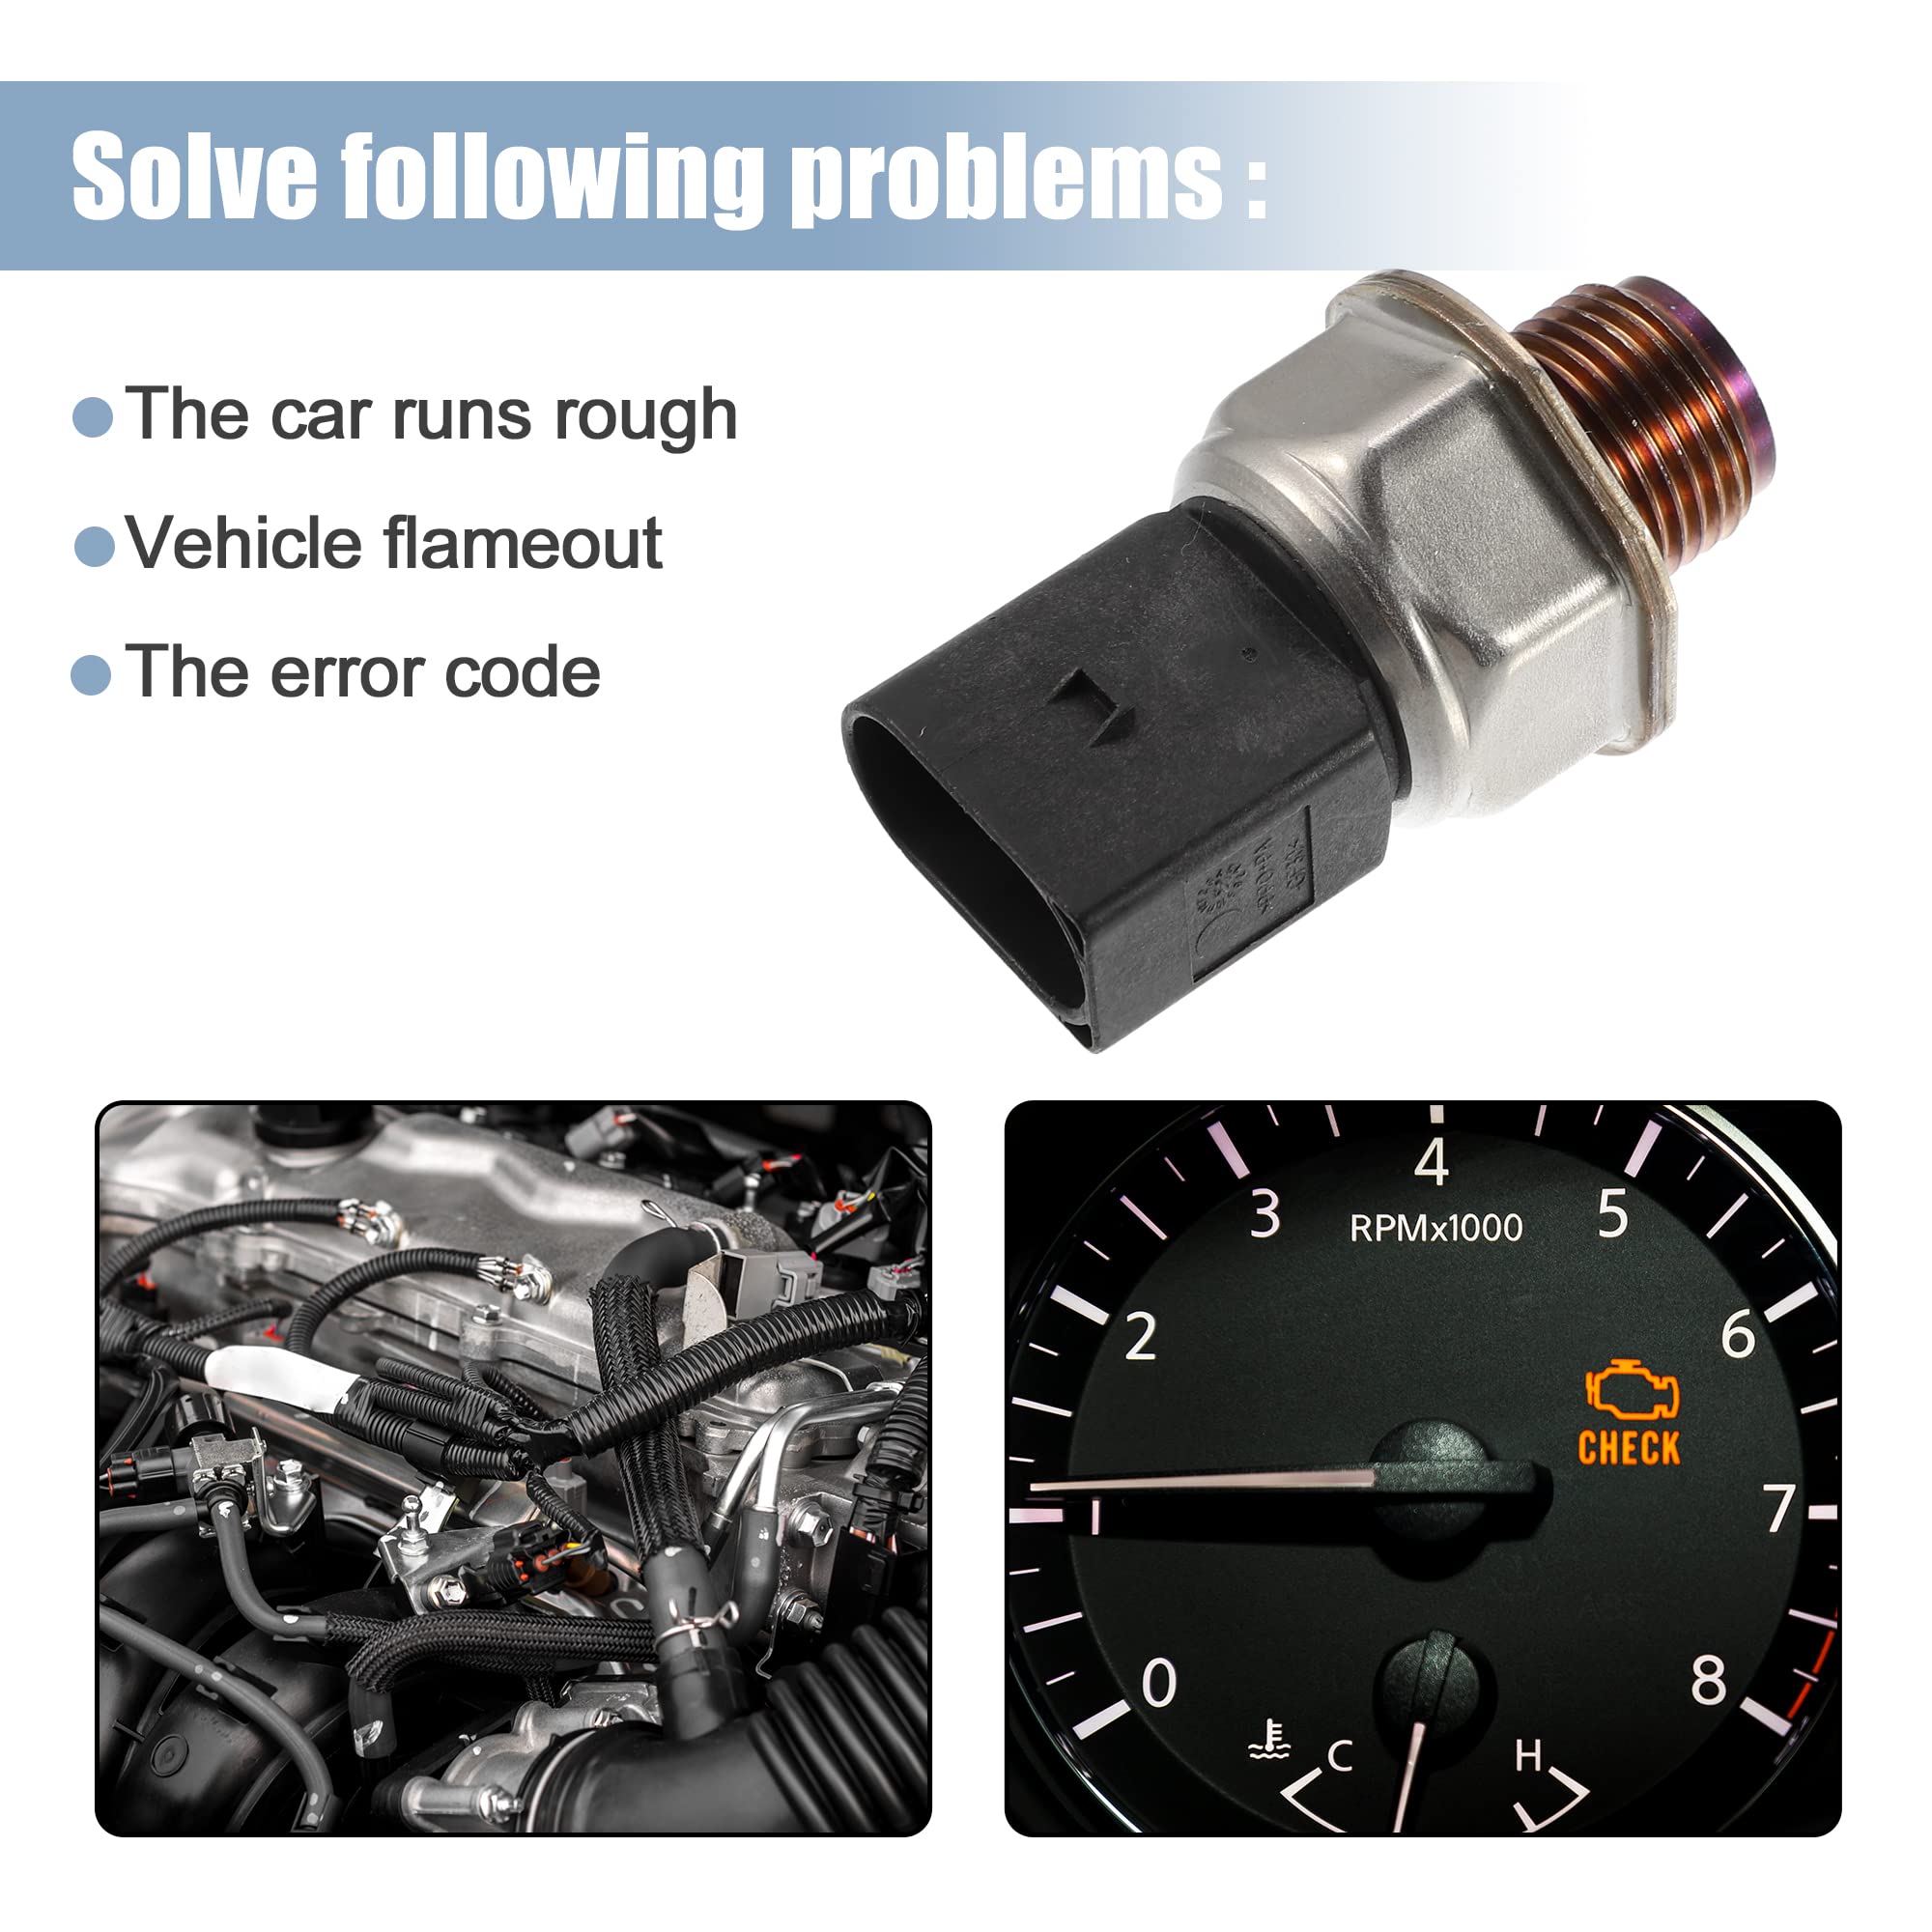 X AUTOHAUX Fuel Rail Pressure Sensor Replacement for Volkswagen Beetle TDI 2.0L L4 - Diesel 2015 04L906054